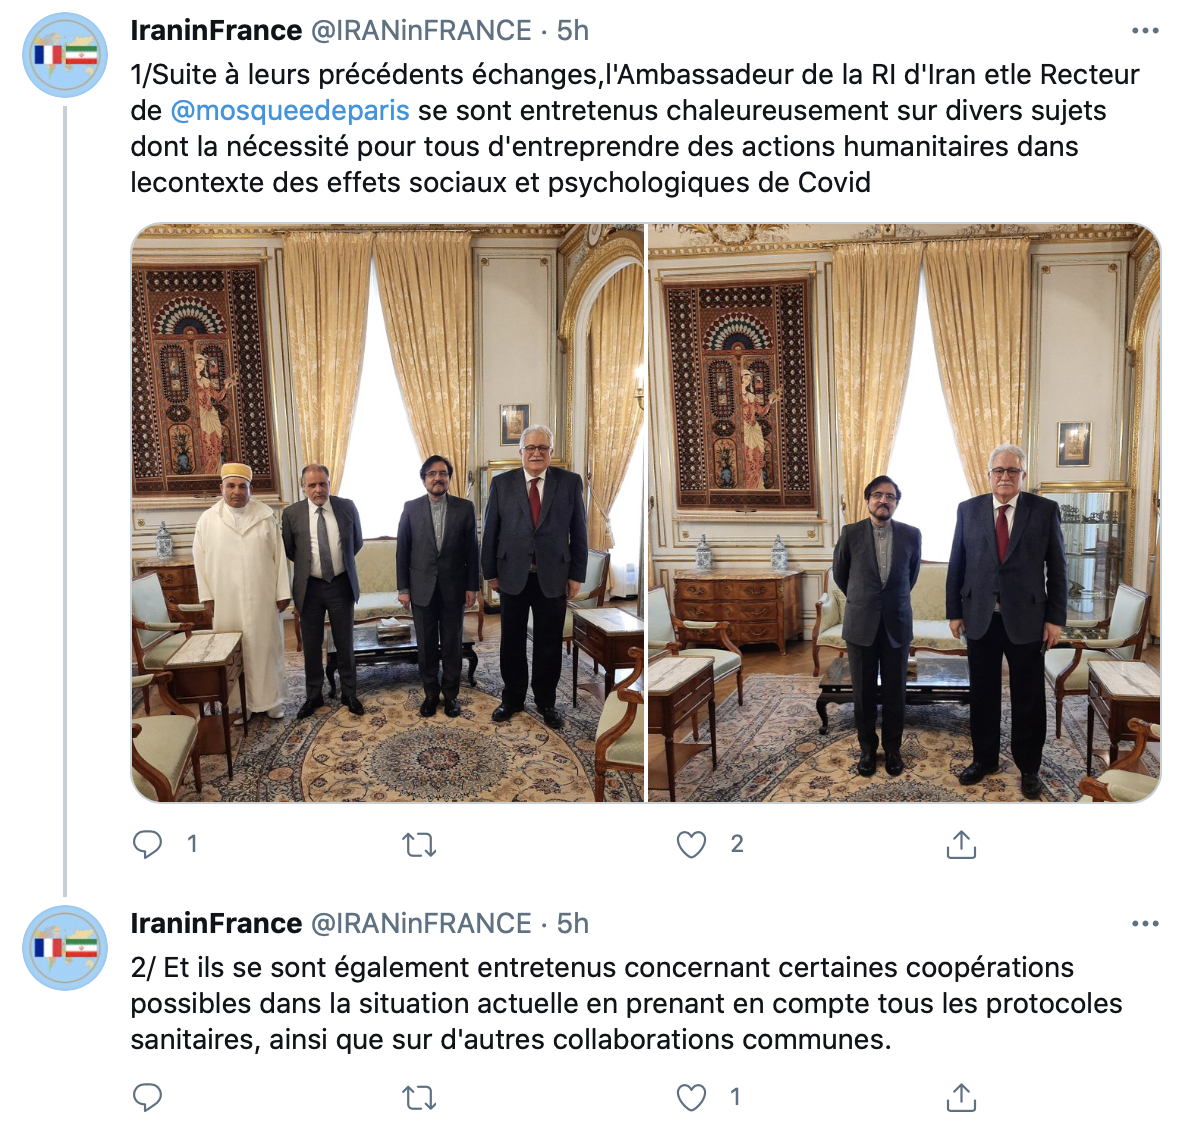  گفت وگوی سفیر ایران در فرانسه با رئیس مسجد بزرگ پاریس